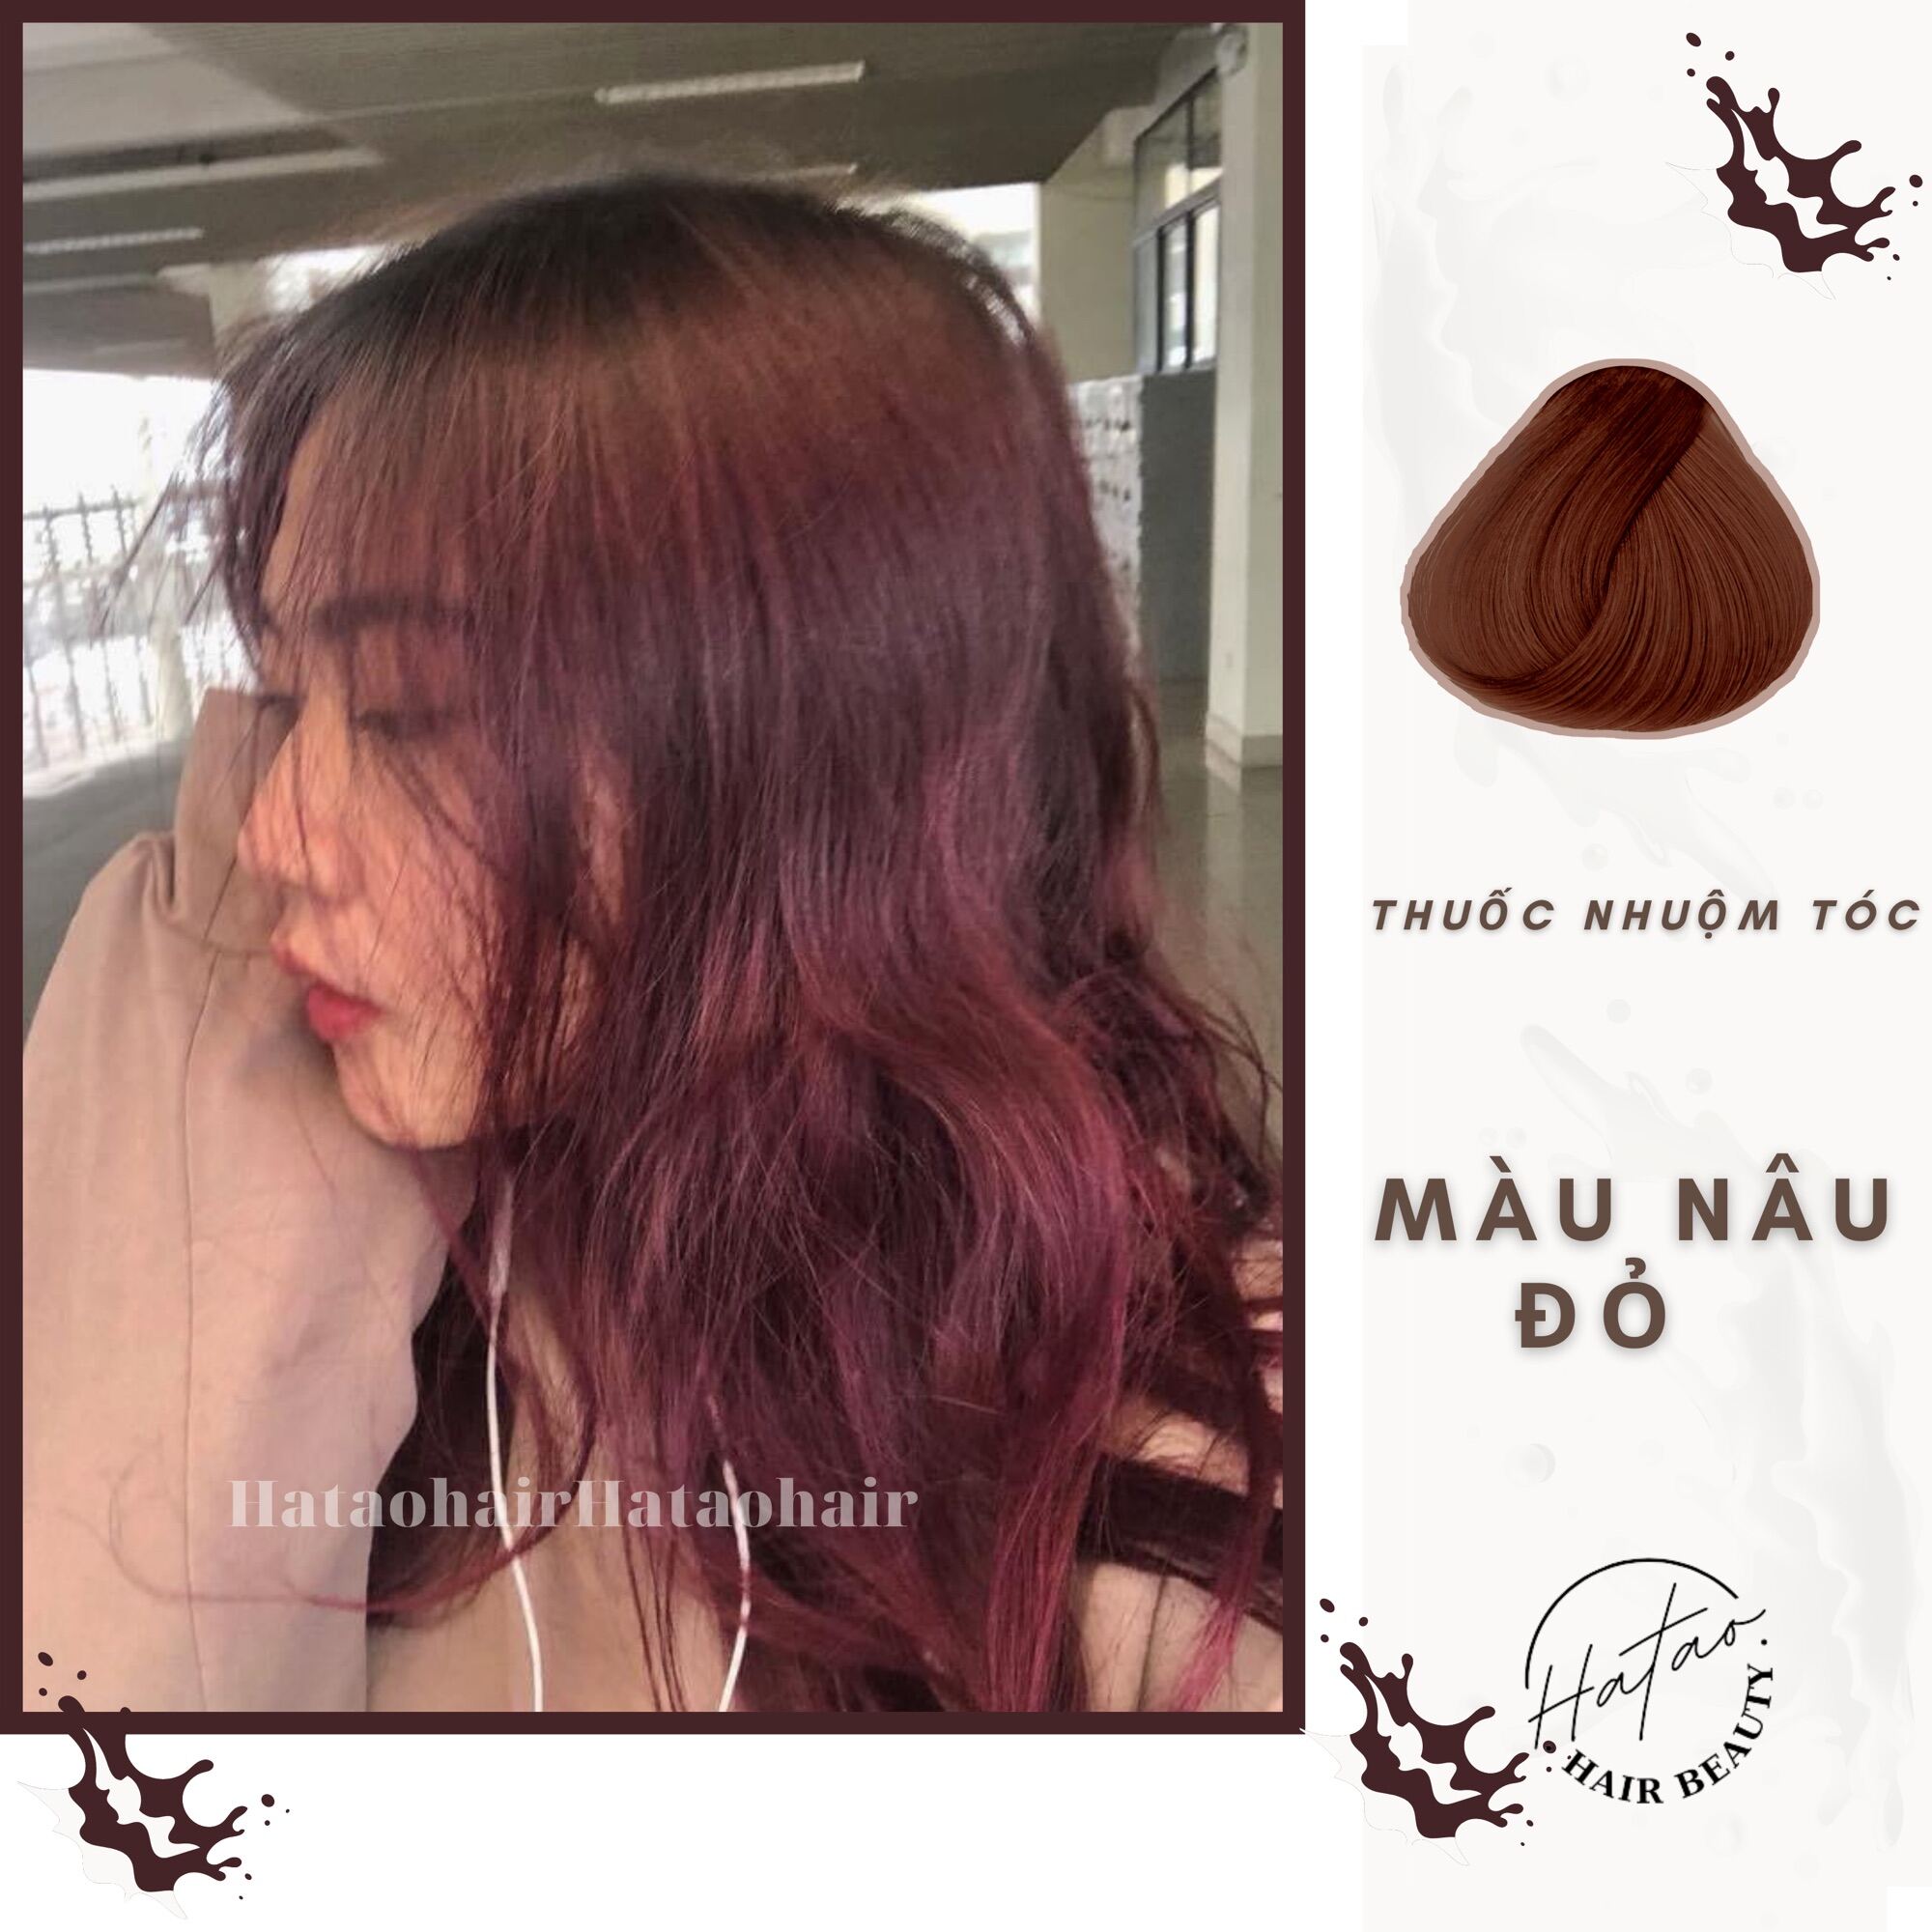 Thuốc nhuộm tóc Kami là sự lựa chọn hoàn hảo cho những người muốn thử nhiều màu sắc tóc khác nhau. Sản phẩm được thiết kế dễ sử dụng và giúp màu tóc lâu phai. Hãy xem hình ảnh để tìm kiếm cảm hứng và sự đa dạng màu sắc của sản phẩm này.